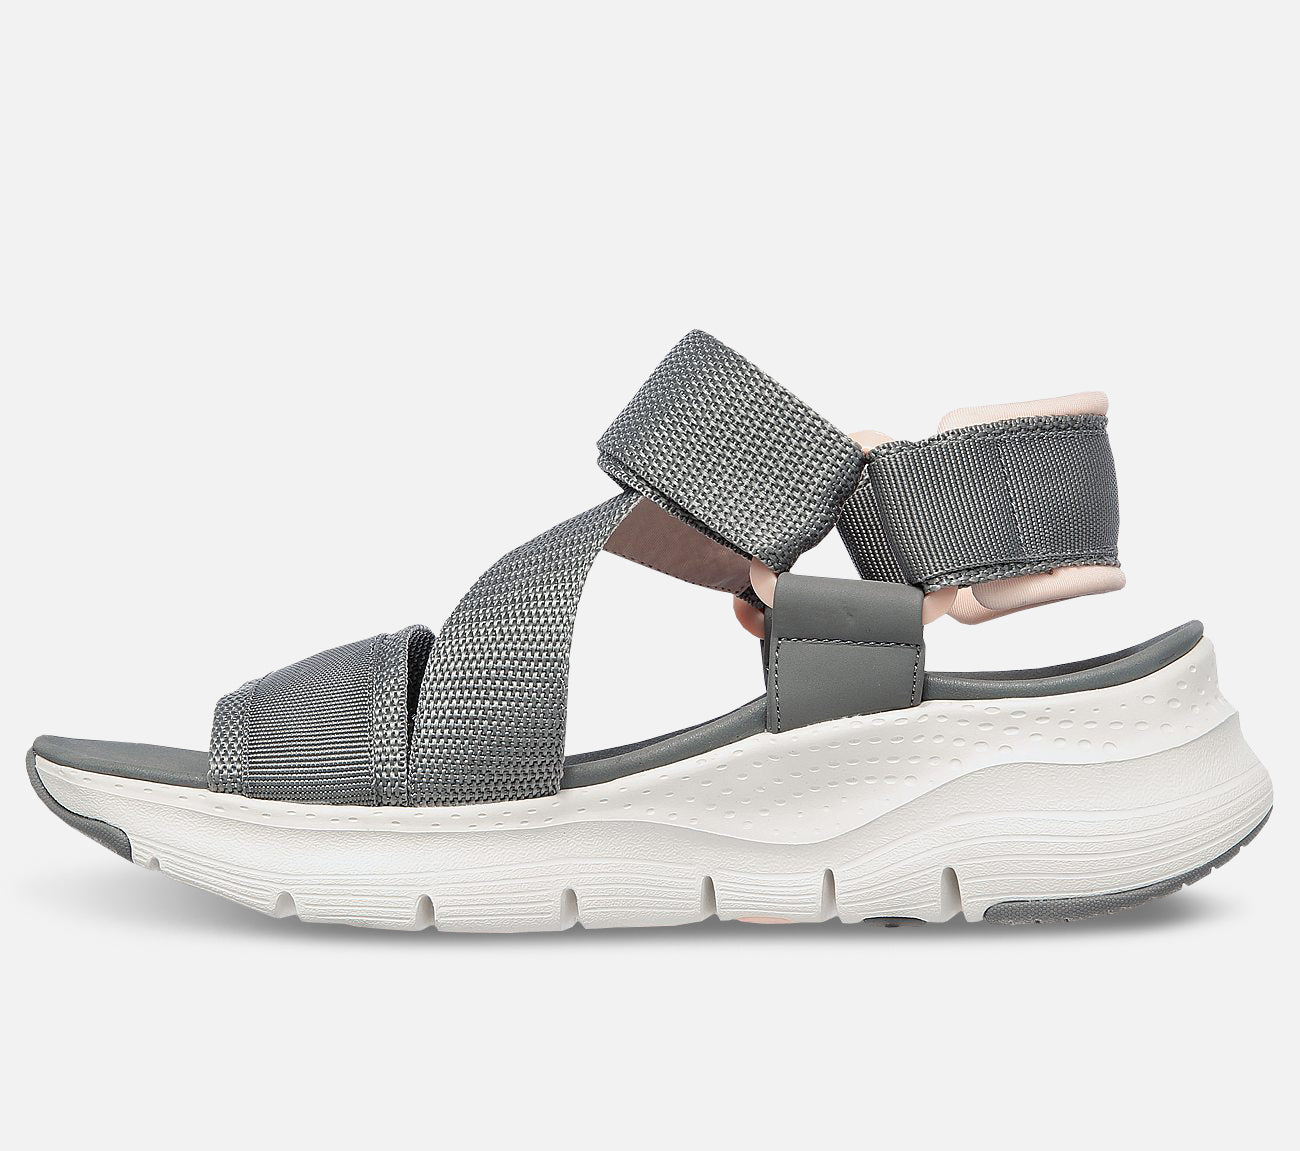 Arch Fit - Pop Retro Sandal Skechers